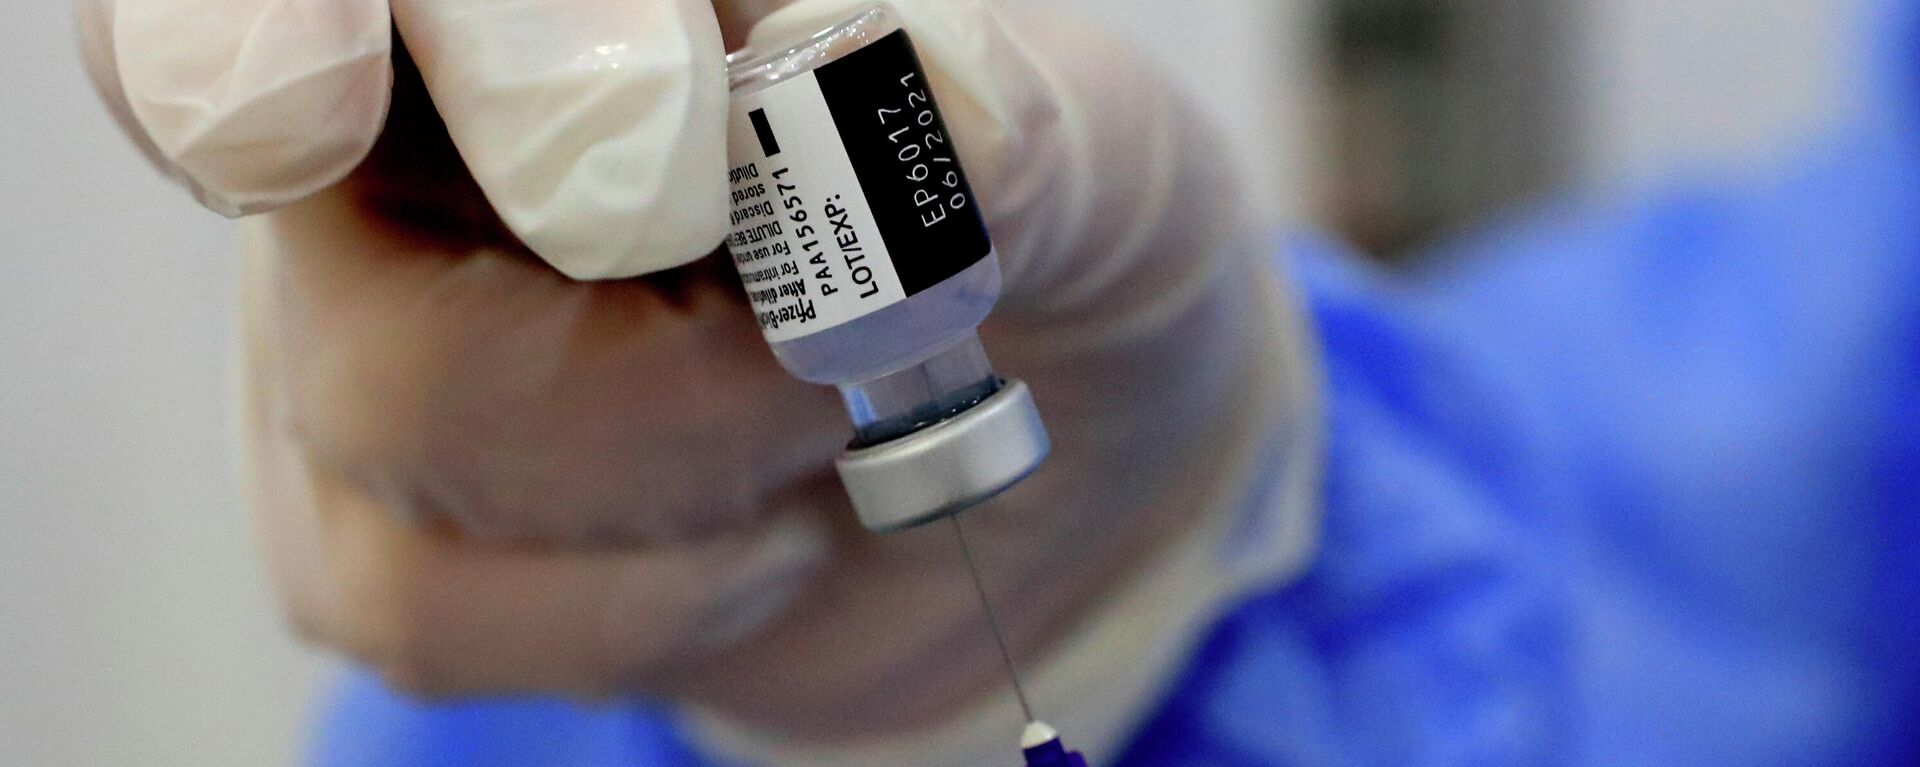 Una enfermera prepara una jeringa de la vacuna contra el coronavirus de Pfizer-BioNTech COVID-19 durante una campaña de vacunación en Beirut, Líbano, 16 de febrero de 2021. - Sputnik Mundo, 1920, 26.05.2021